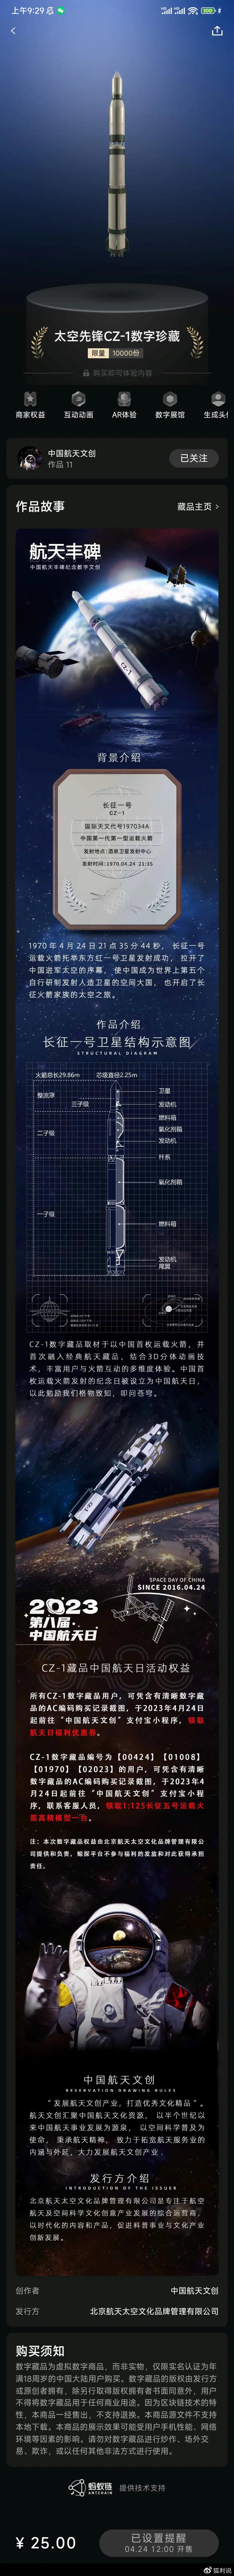 鲸探将在中国航天日发售长征一号、天问一号主题数字藏品- 知乎